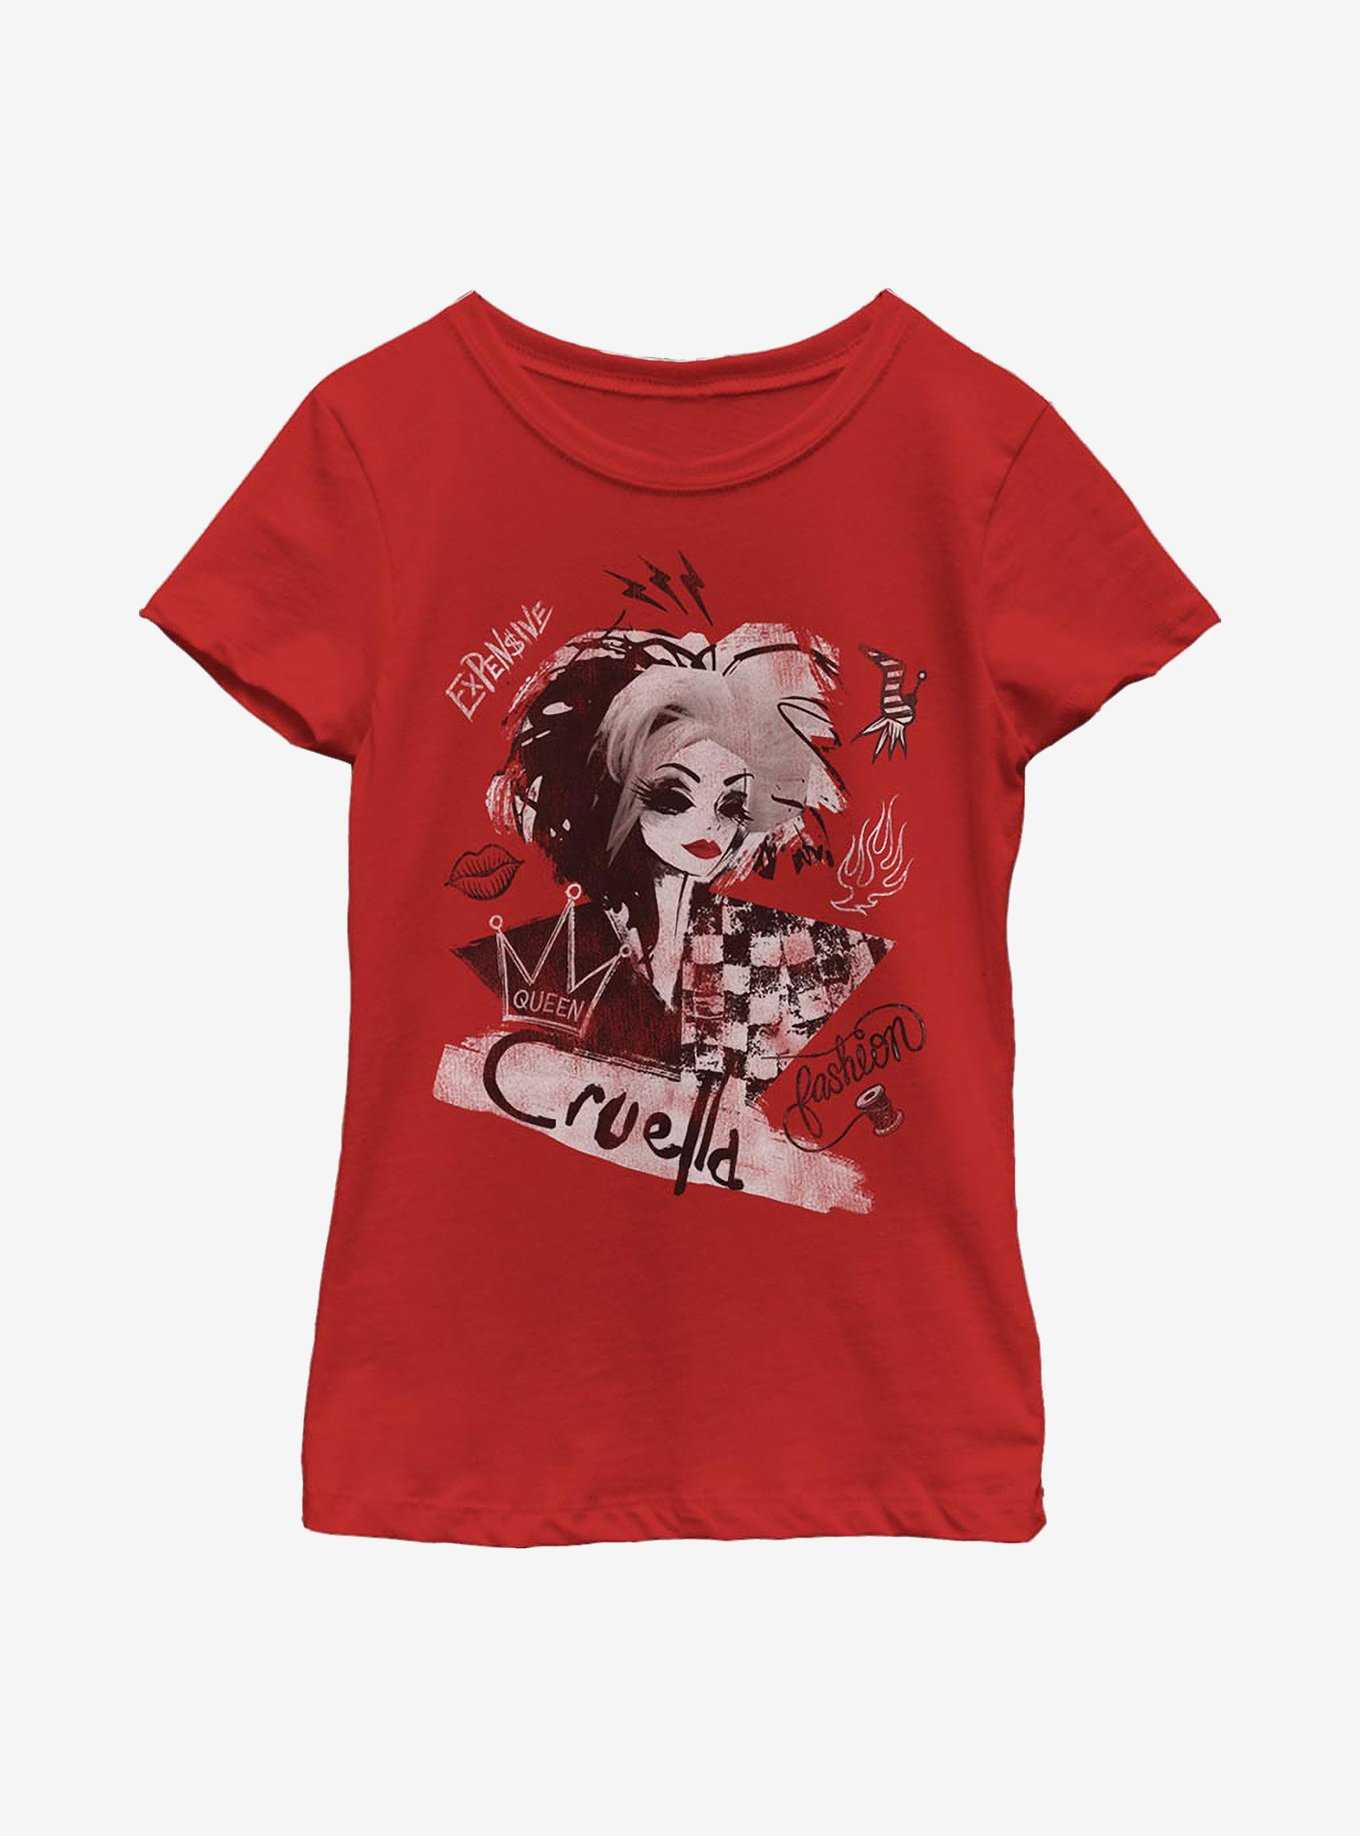 Disney Cruella Artsy Youth Girls T-Shirt, , hi-res